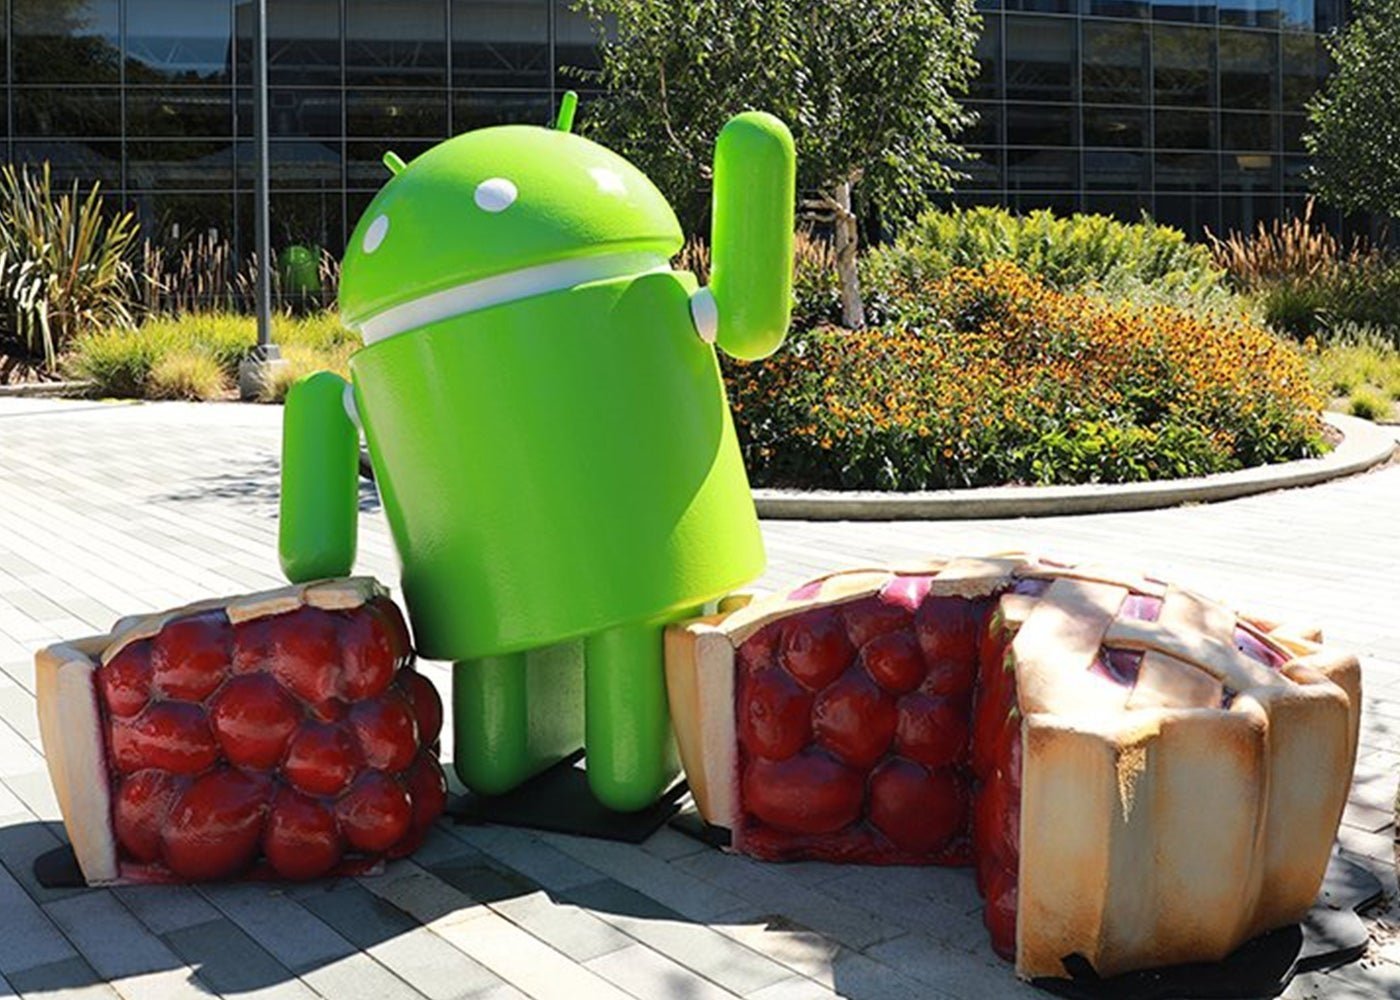 POCO F1: ya puedes instalar Android Pie gracias a LineageOS 16